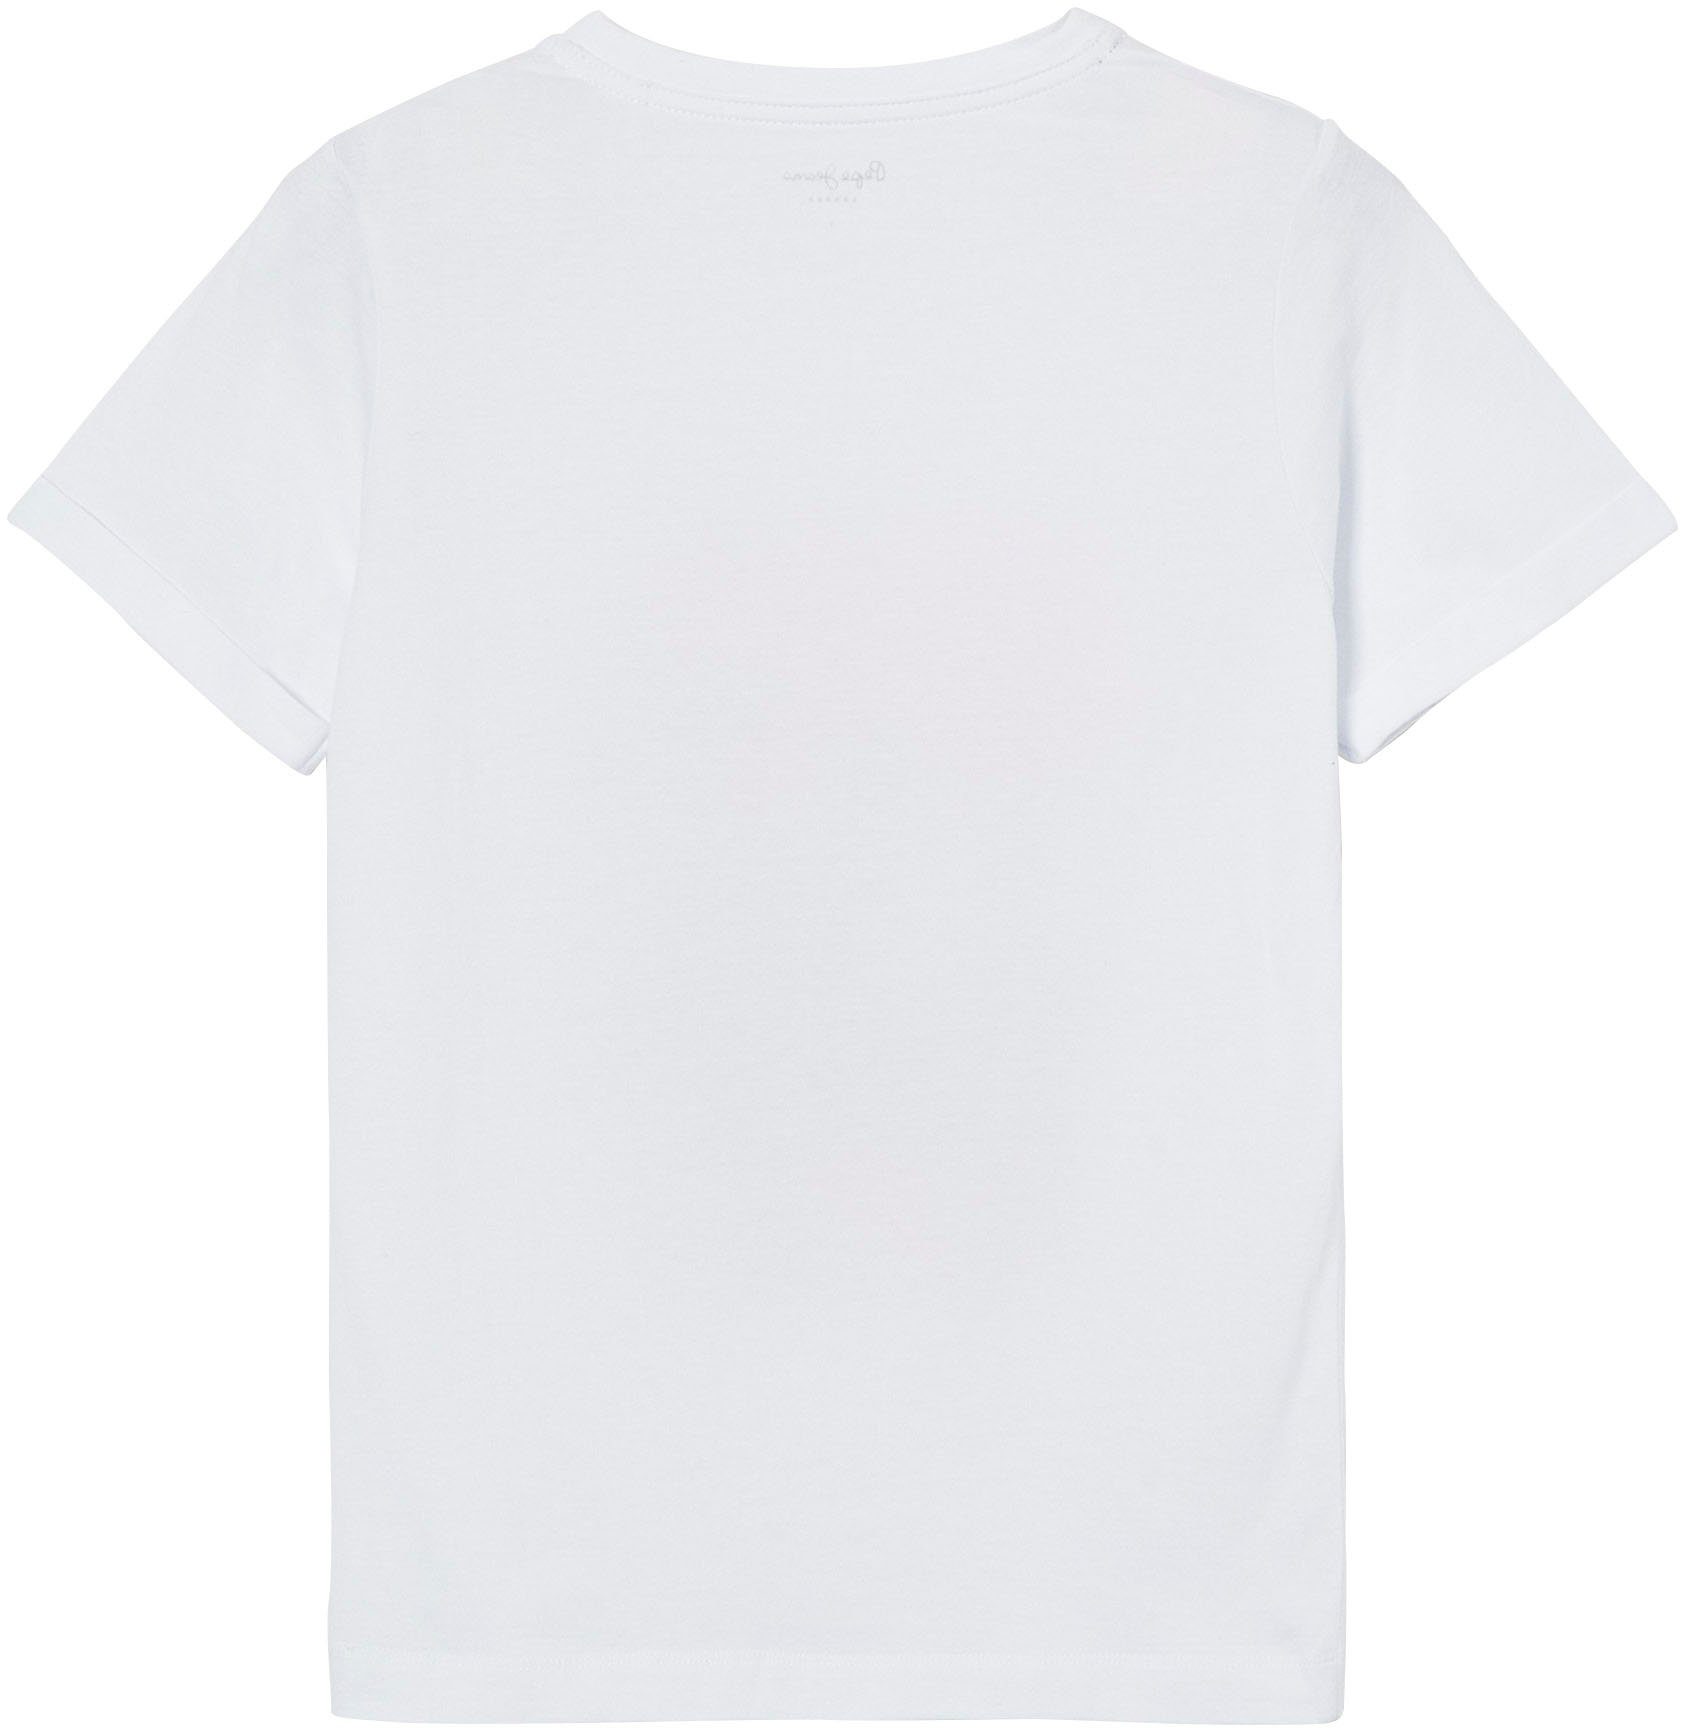 mit T-Shirt und tollem Passform 800WHITE oversized in Jeans Frontprint markentypischem Pepe